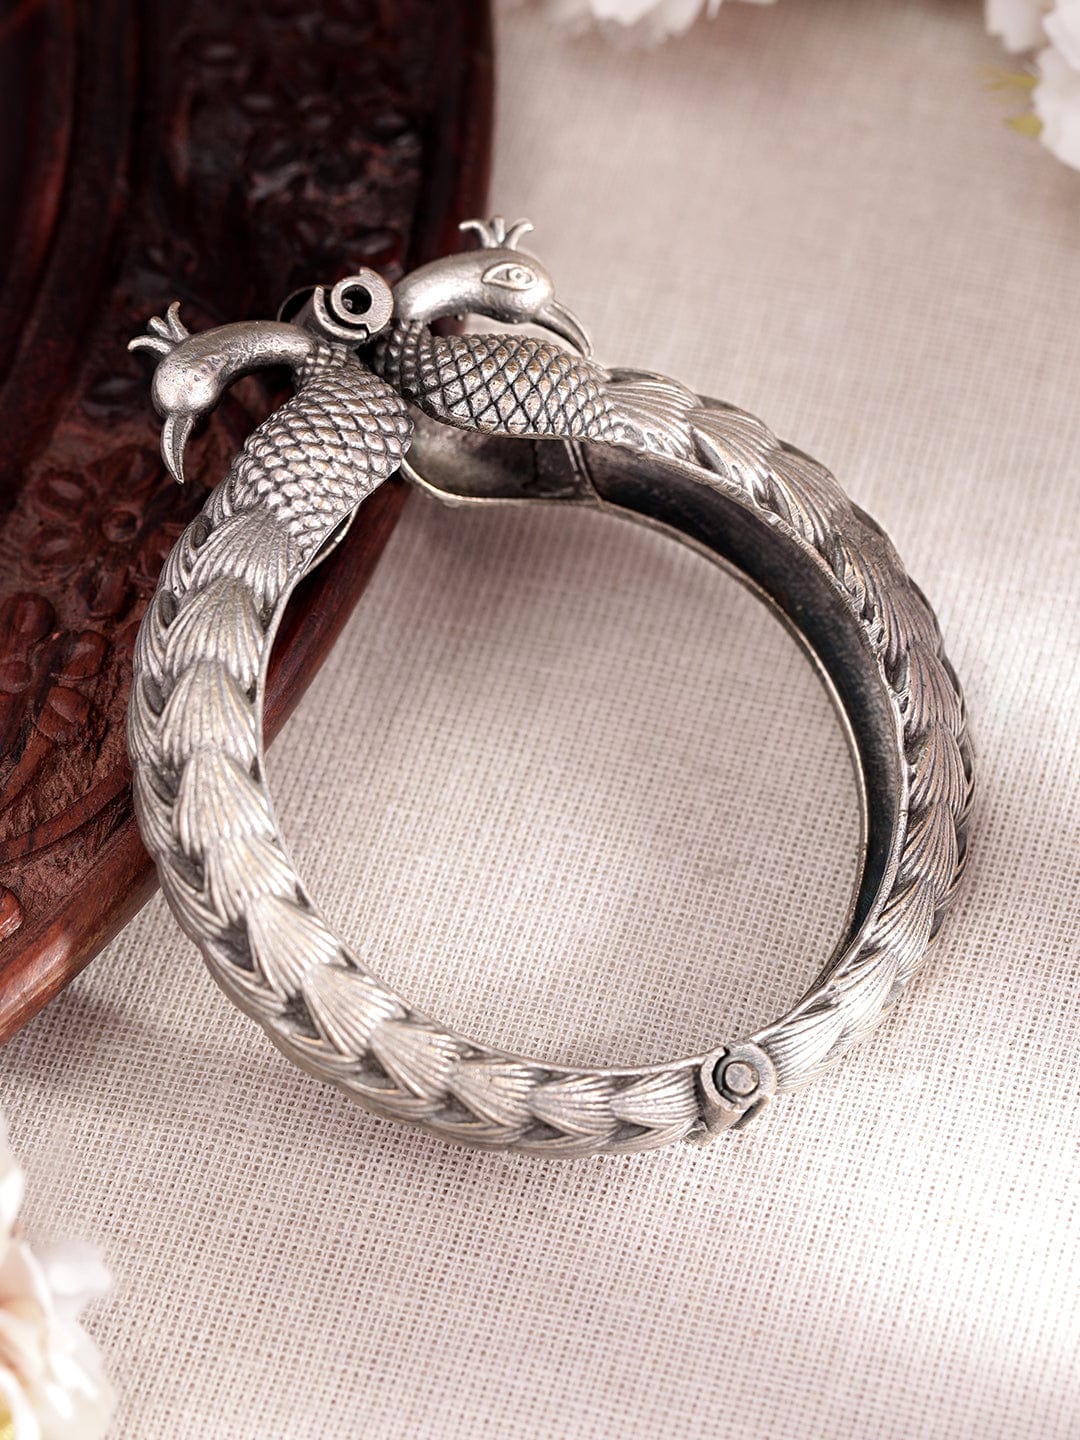 Buy Silver Dragon Bracelet, Double Dragon Head Bracelet, Stainless Steel  Men's Bracelet, Unisex Bracelet, Gift for Boyfriend, Gothic Bracelet,  Online in India - Etsy